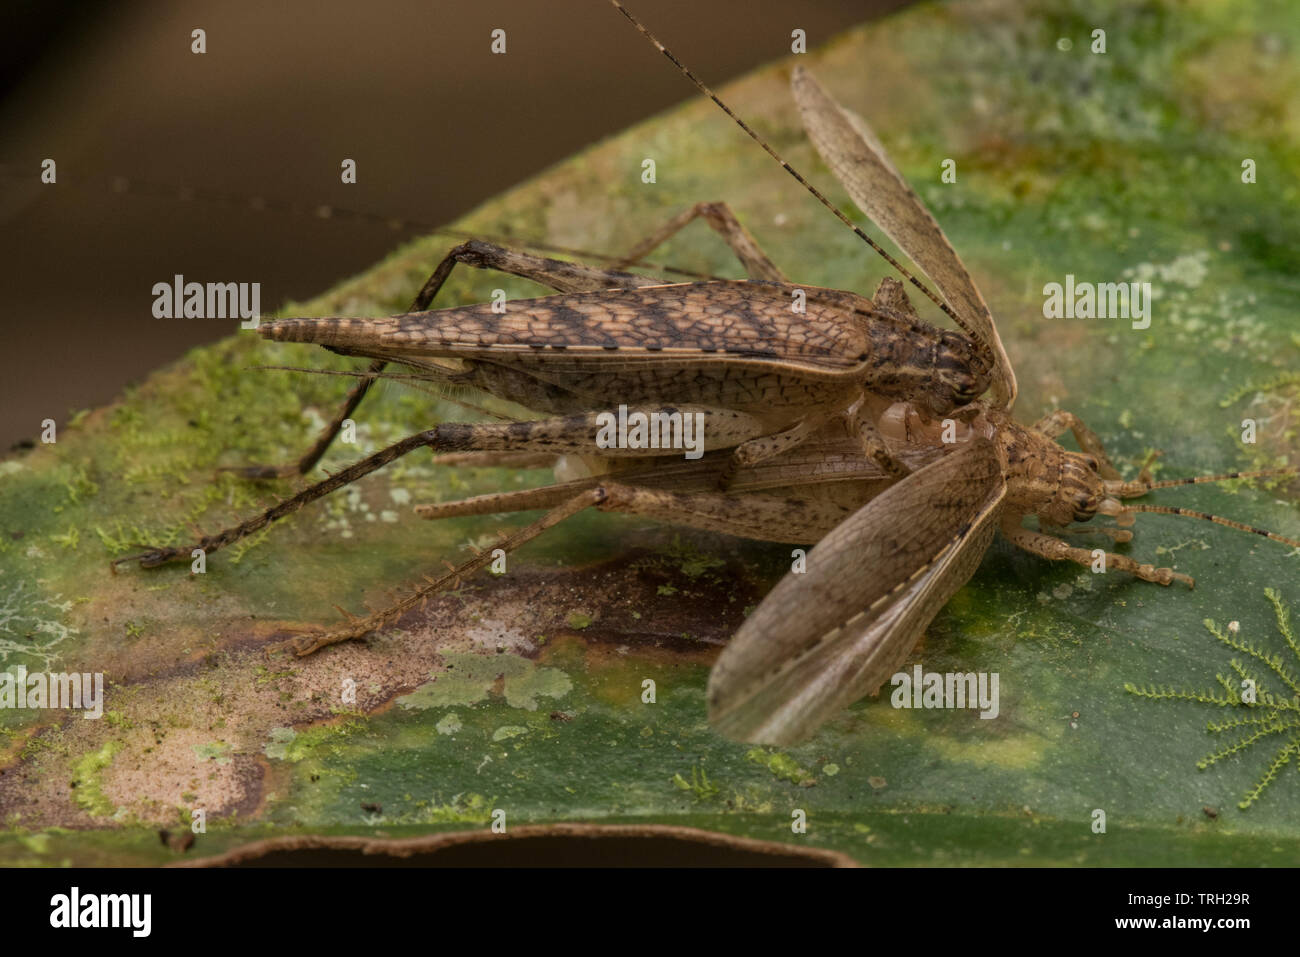 Un cricket jette son ancien exosquelette, c'est assis dessus de son ancien exosquelette pour un court moment avant de continuer. Banque D'Images